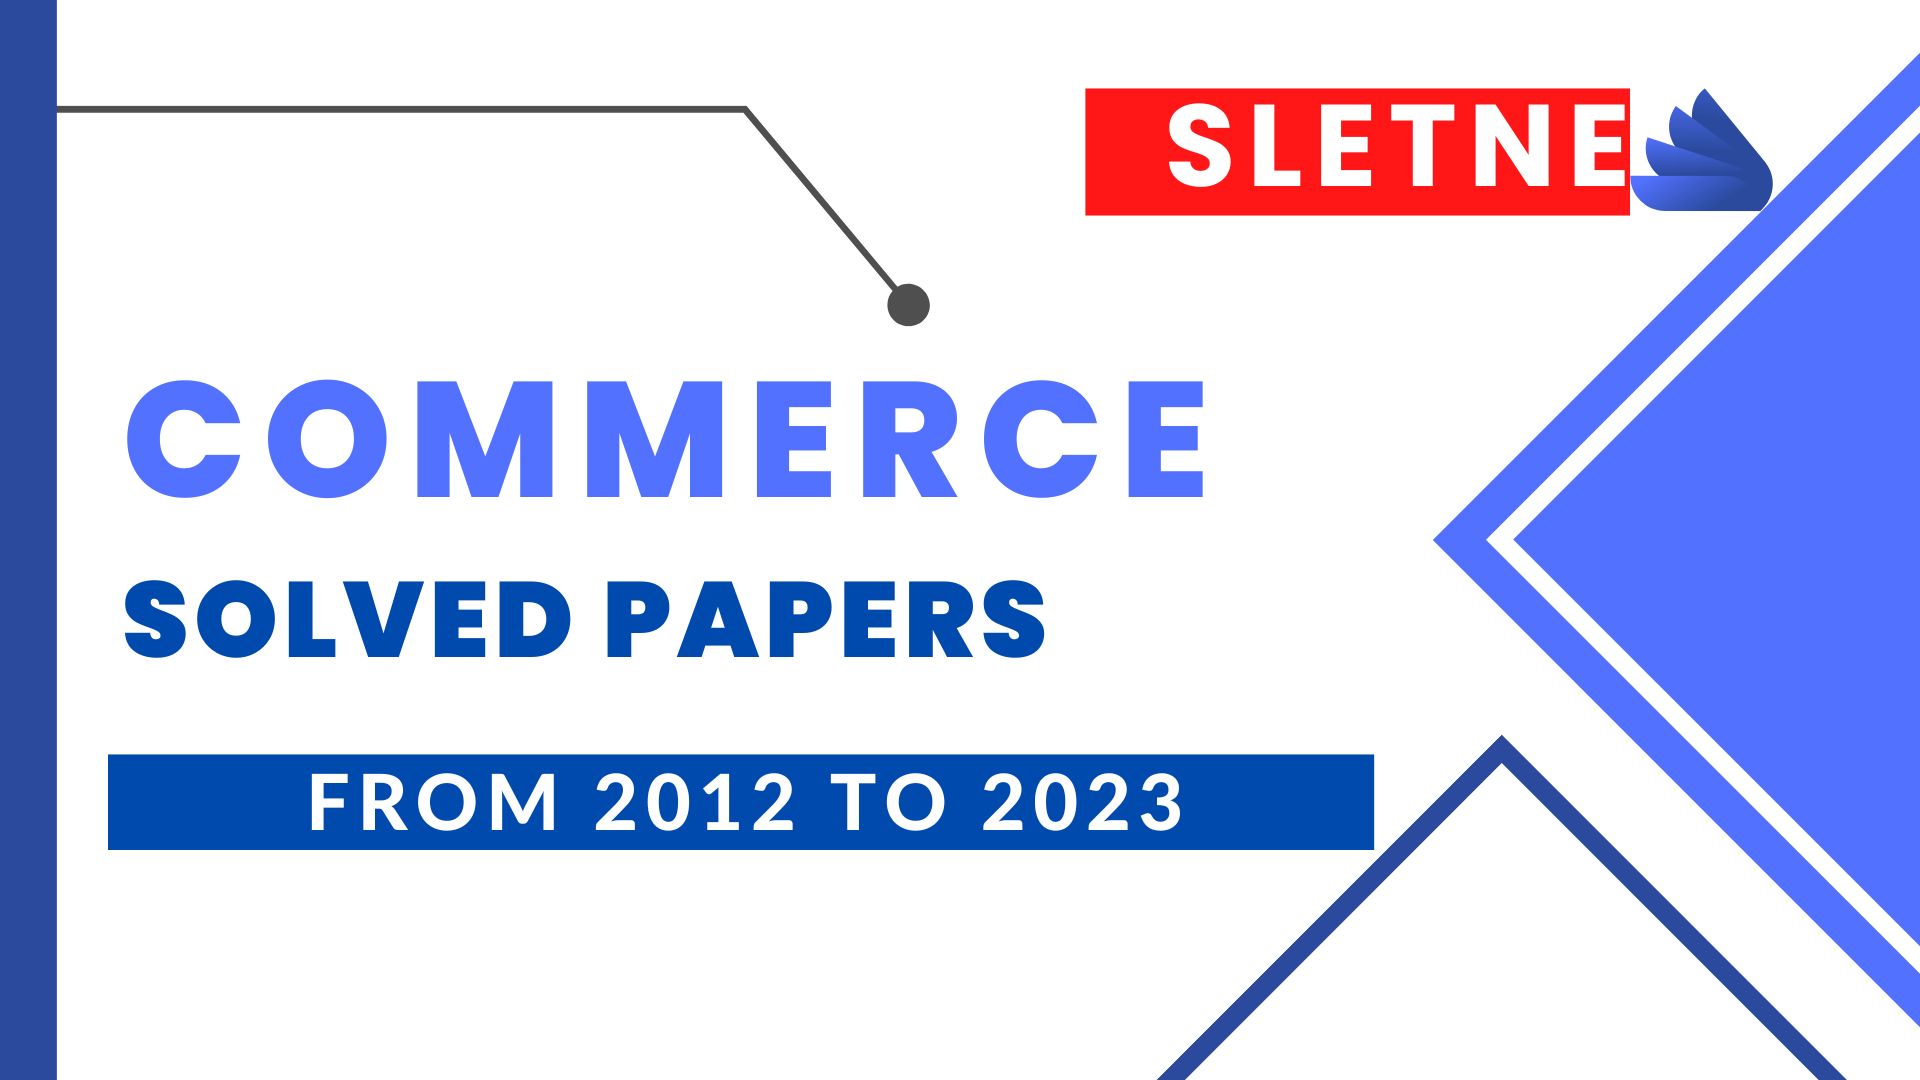 SLET NE Commerce Solved Paper 2019